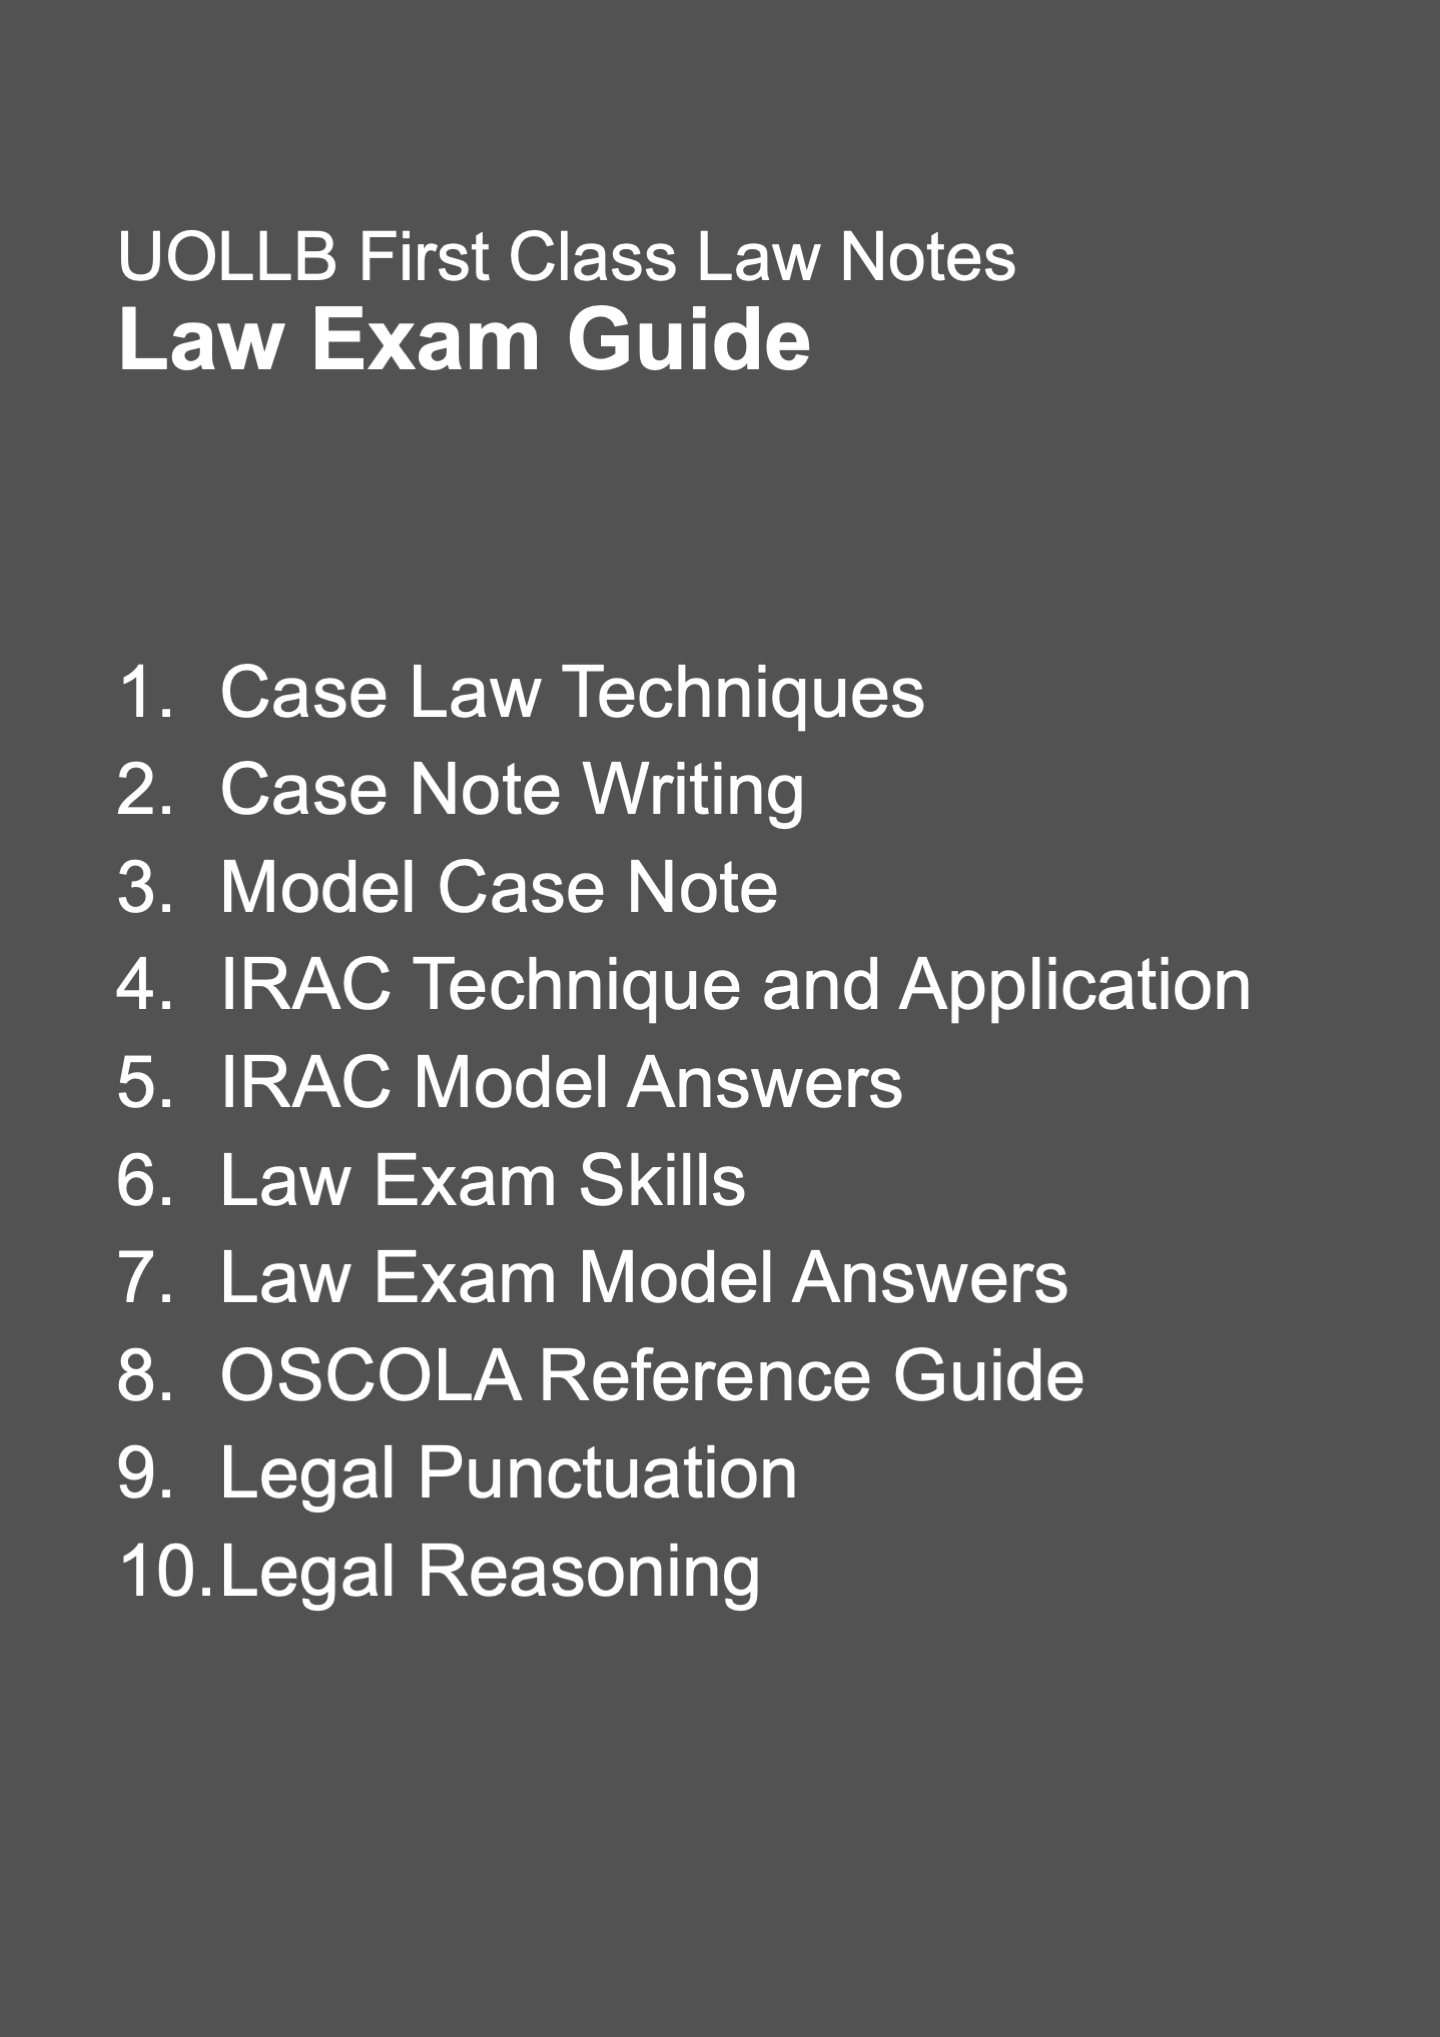 Law Exam Skills